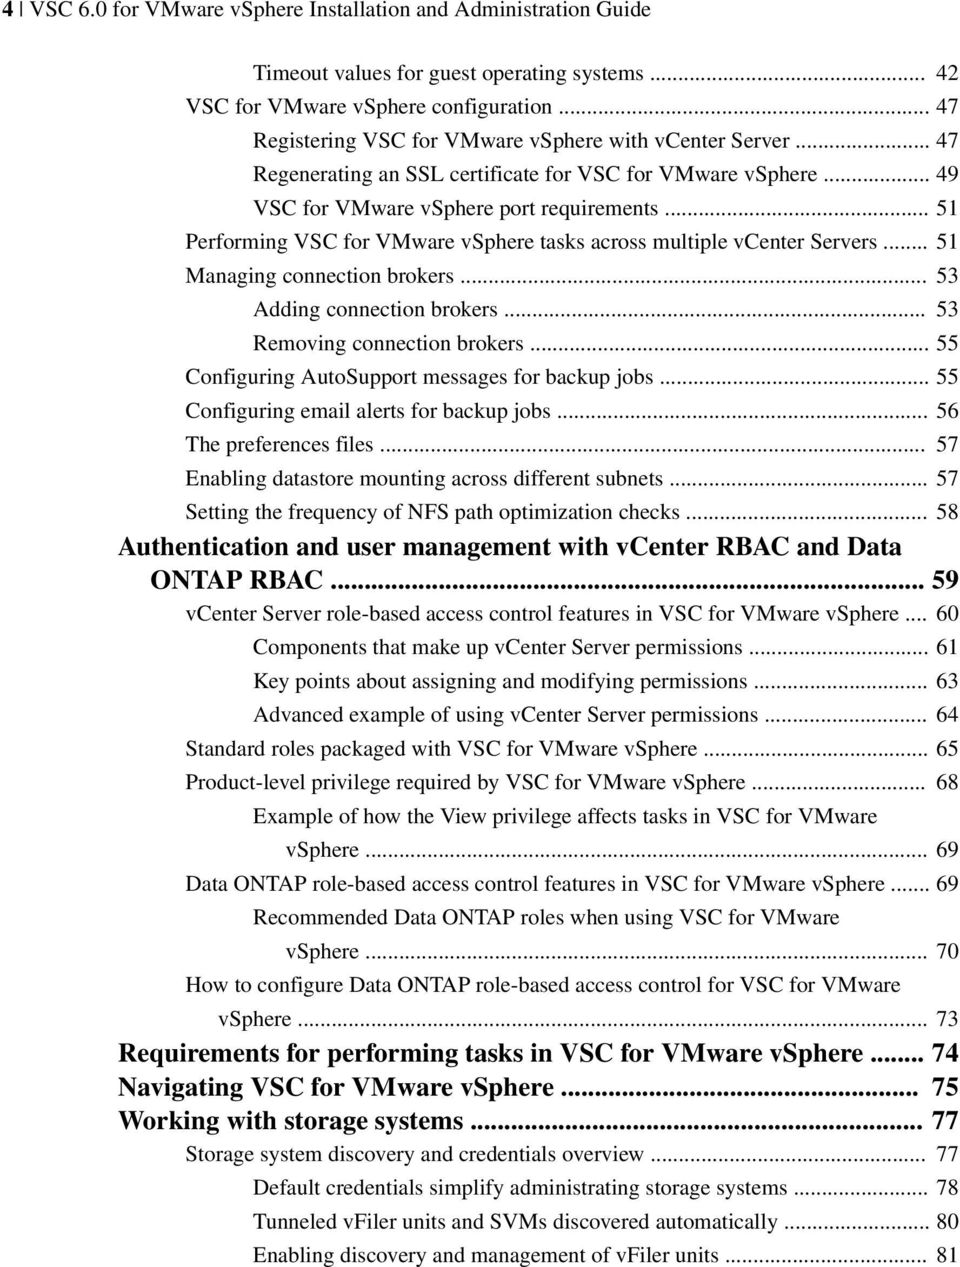 .. 51 Performing VSC for VMware vsphere tasks across multiple vcenter Servers... 51 Managing connection brokers... 53 Adding connection brokers... 53 Removing connection brokers.